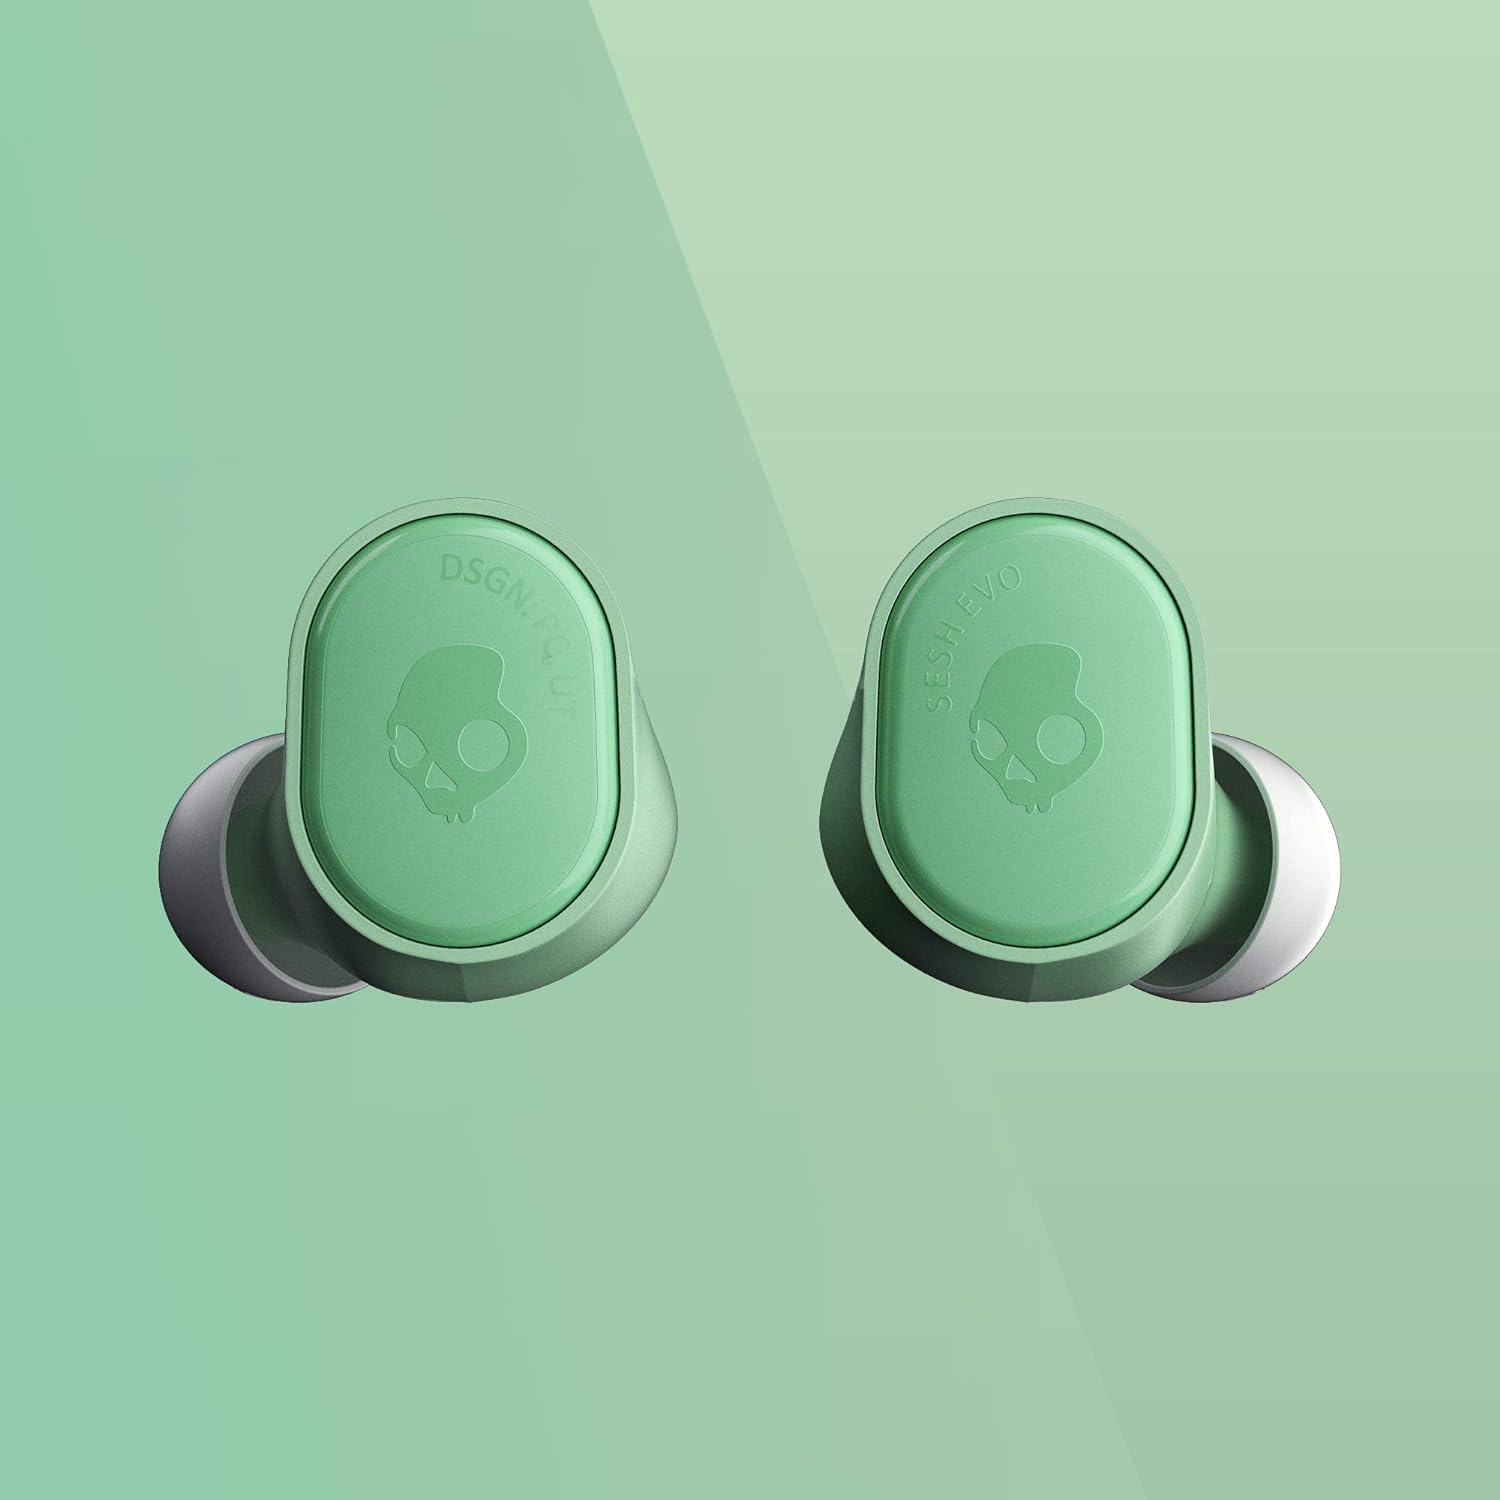 Summary: Skullcandy Sesh Evo In-Ear Wireless Earbuds - Mint